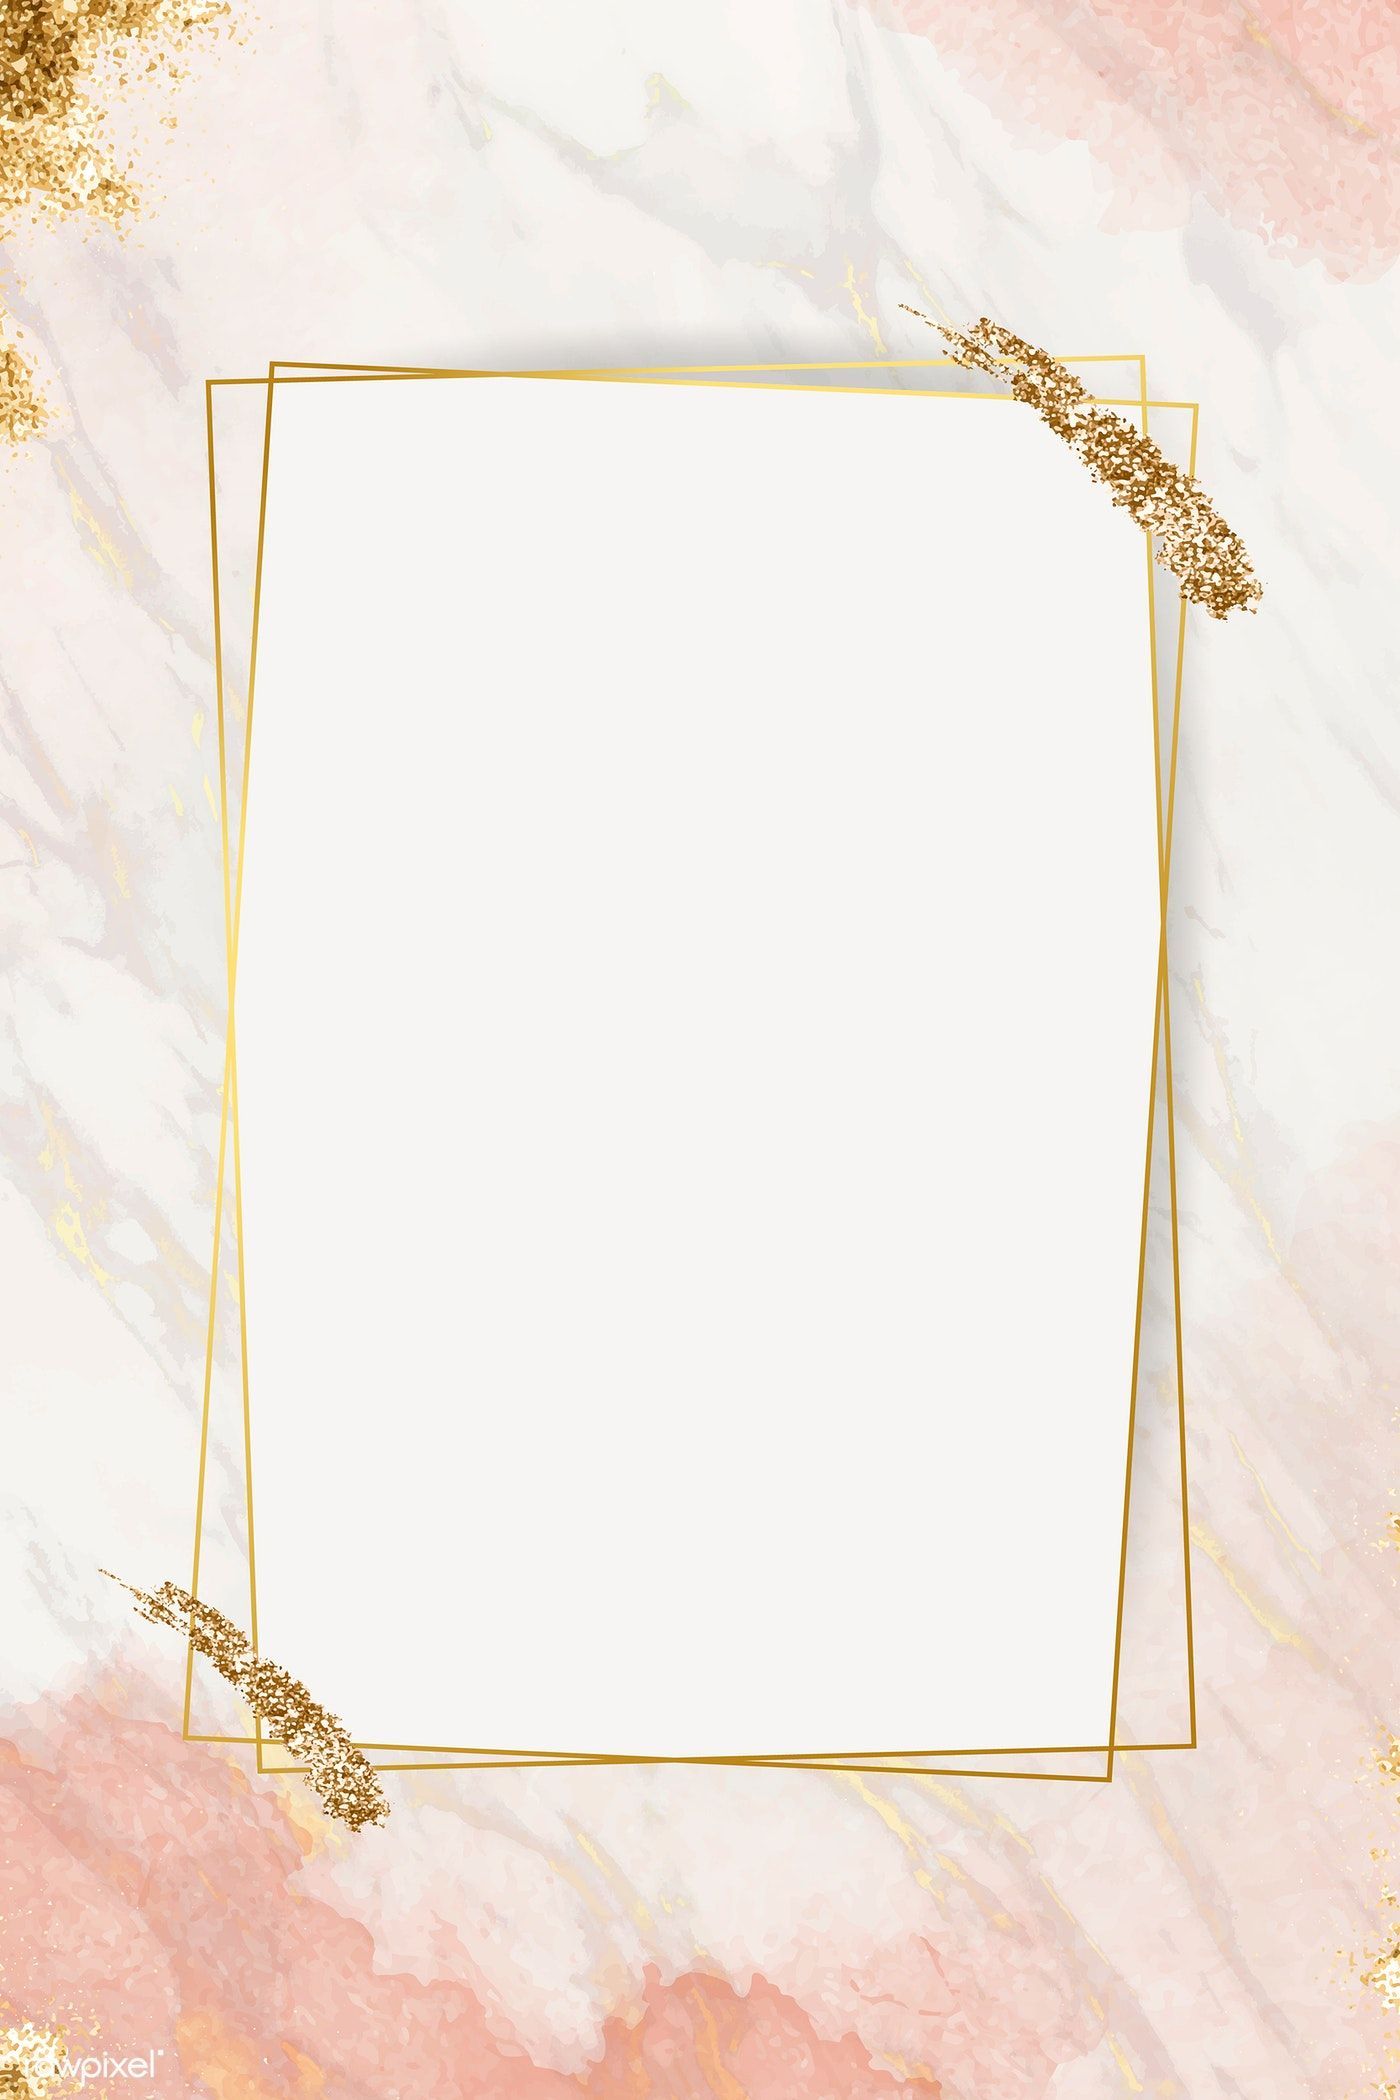 Download premium vector of Shimmering golden frame design vector 1212064. Frame design, Pink glitter background, Instagram frame